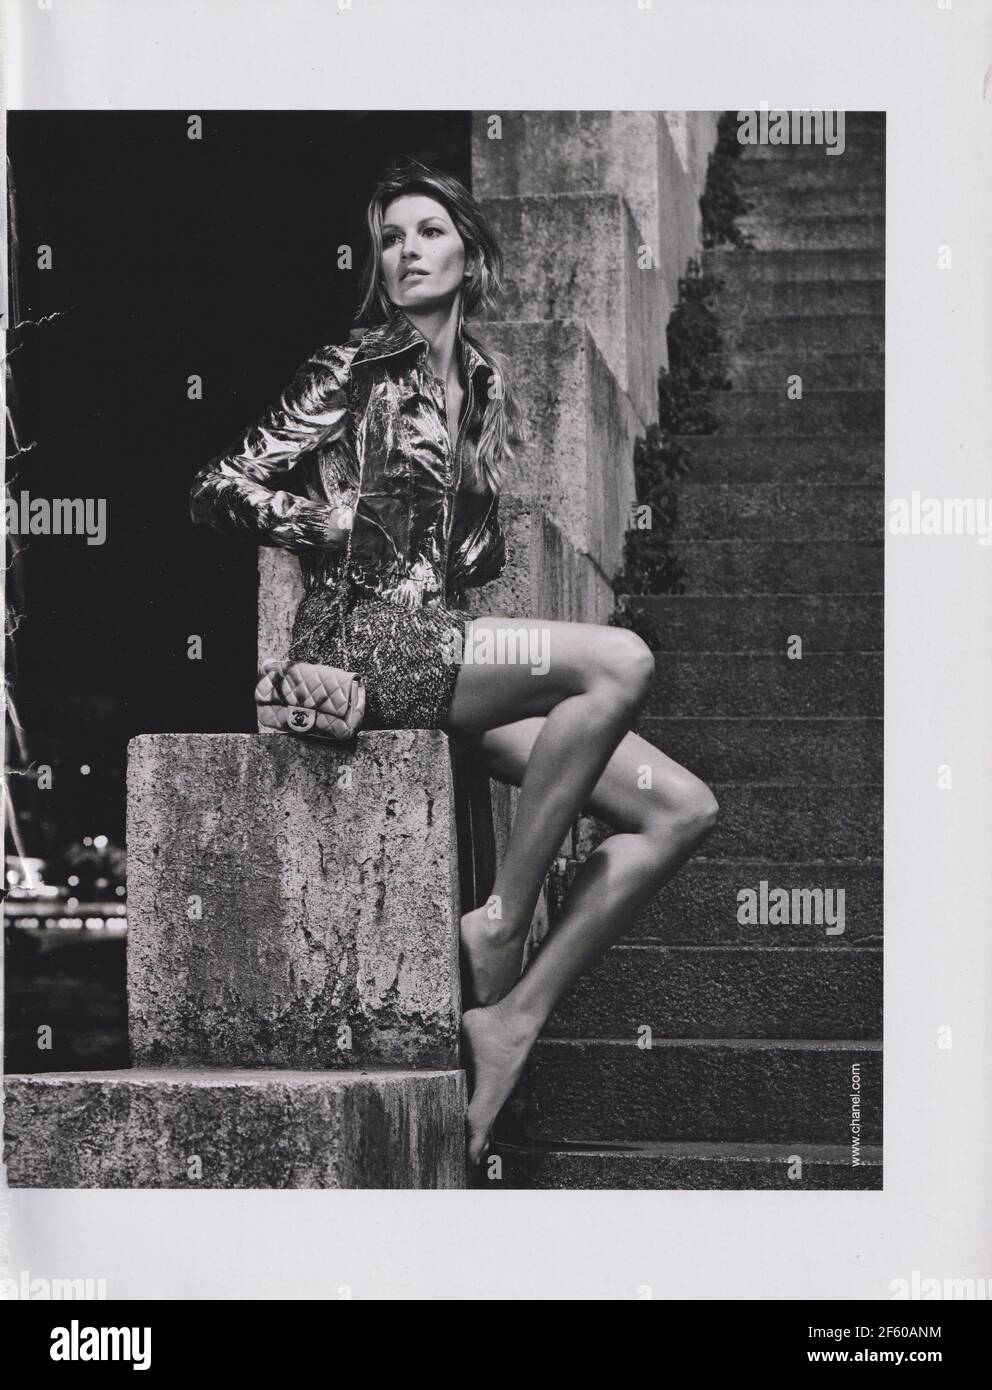 Affiche publicitaire CHANEL maison de mode avec Gisele Bundchen dans le magazine papier de 2015 ans, publicité, publicité CHANEL créative de 2010 Banque D'Images